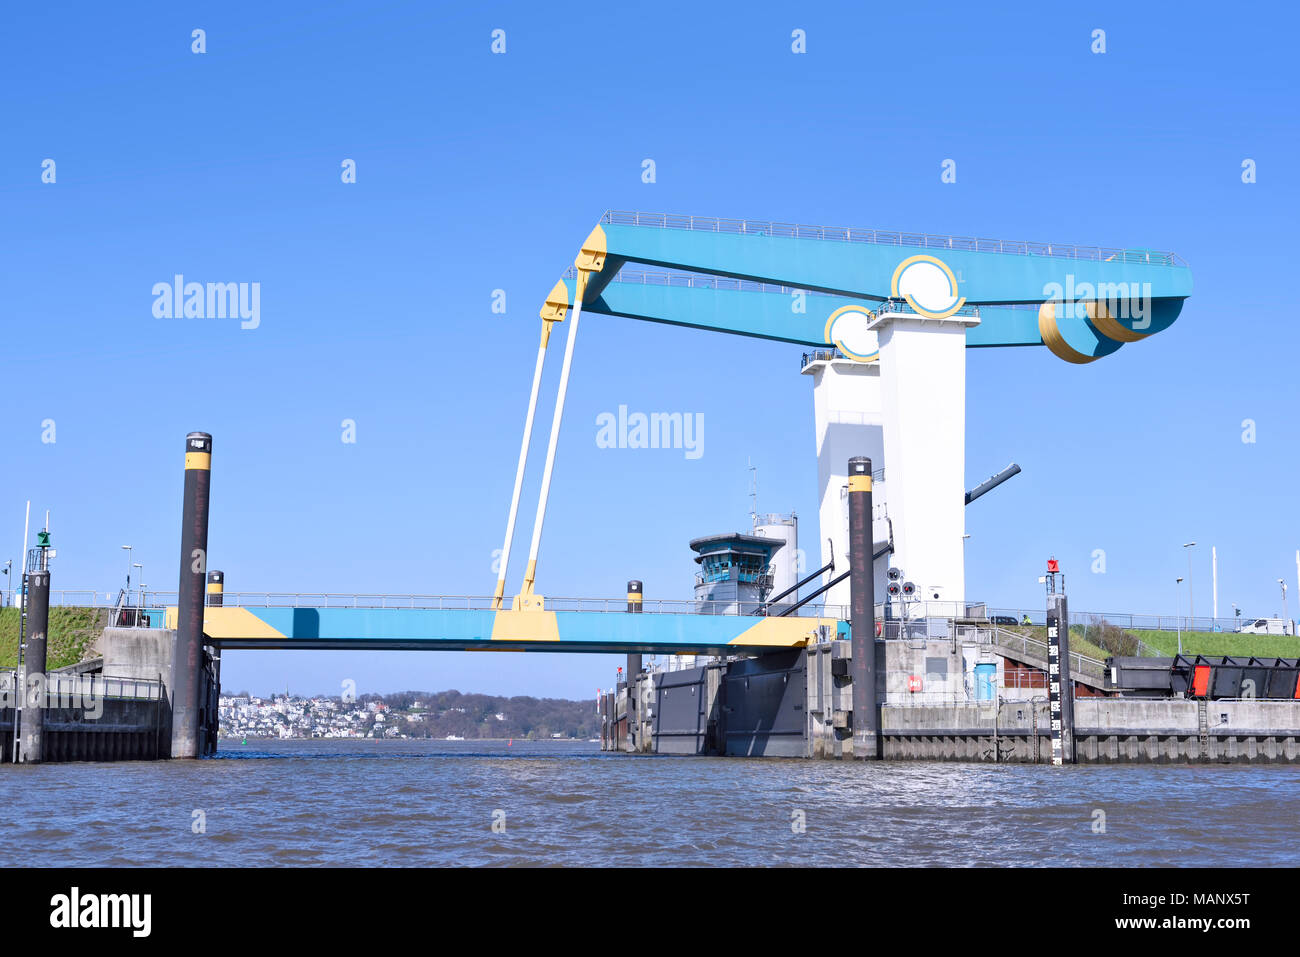 Zugbrücke auf einem Fluss, Versand oder Schiff transport Denkmal. Deutschland, Hamburg. Stockfoto